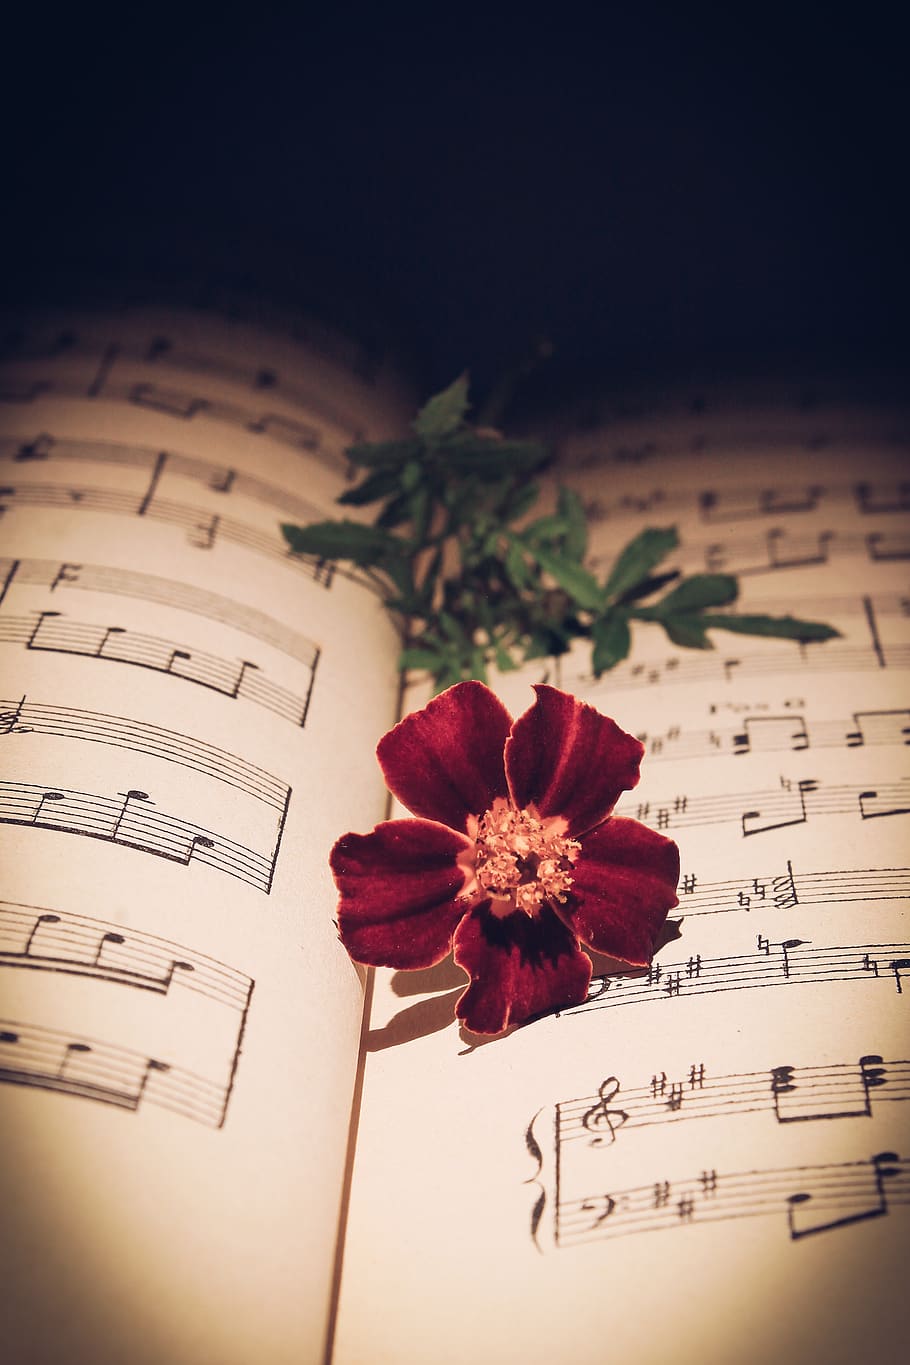 mawar merah, mawar, bunga merah, bunga, romantis, kehidupan, alam, anyelir, naskah, musik kuno waktu romantis